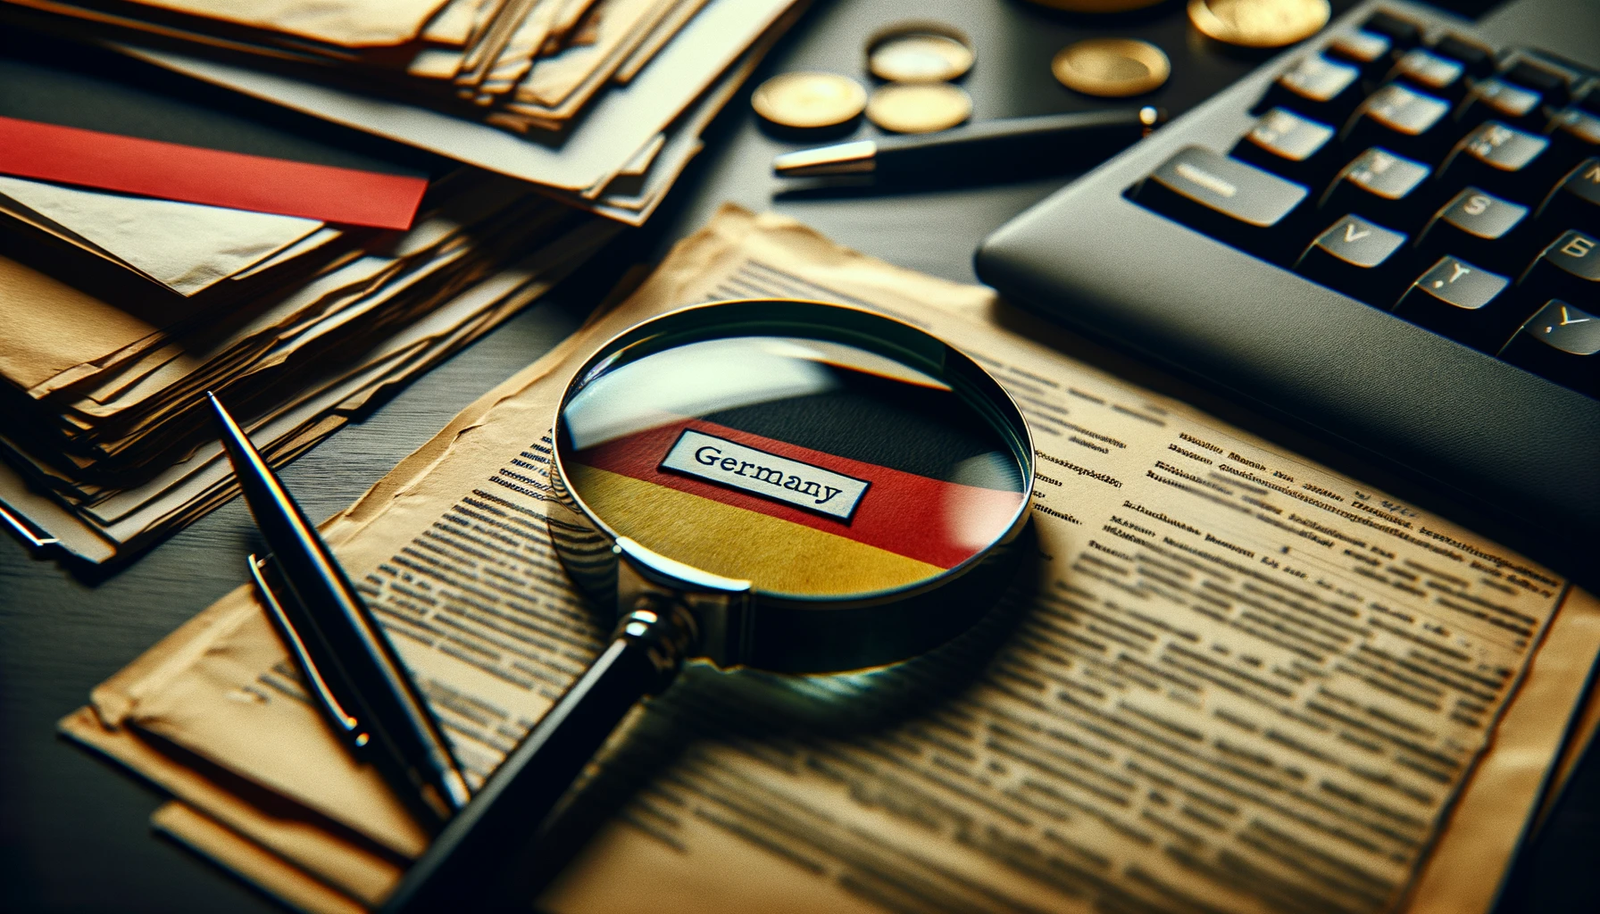 Praca w Niemczech: Jakie Dokumenty są Wymagane?